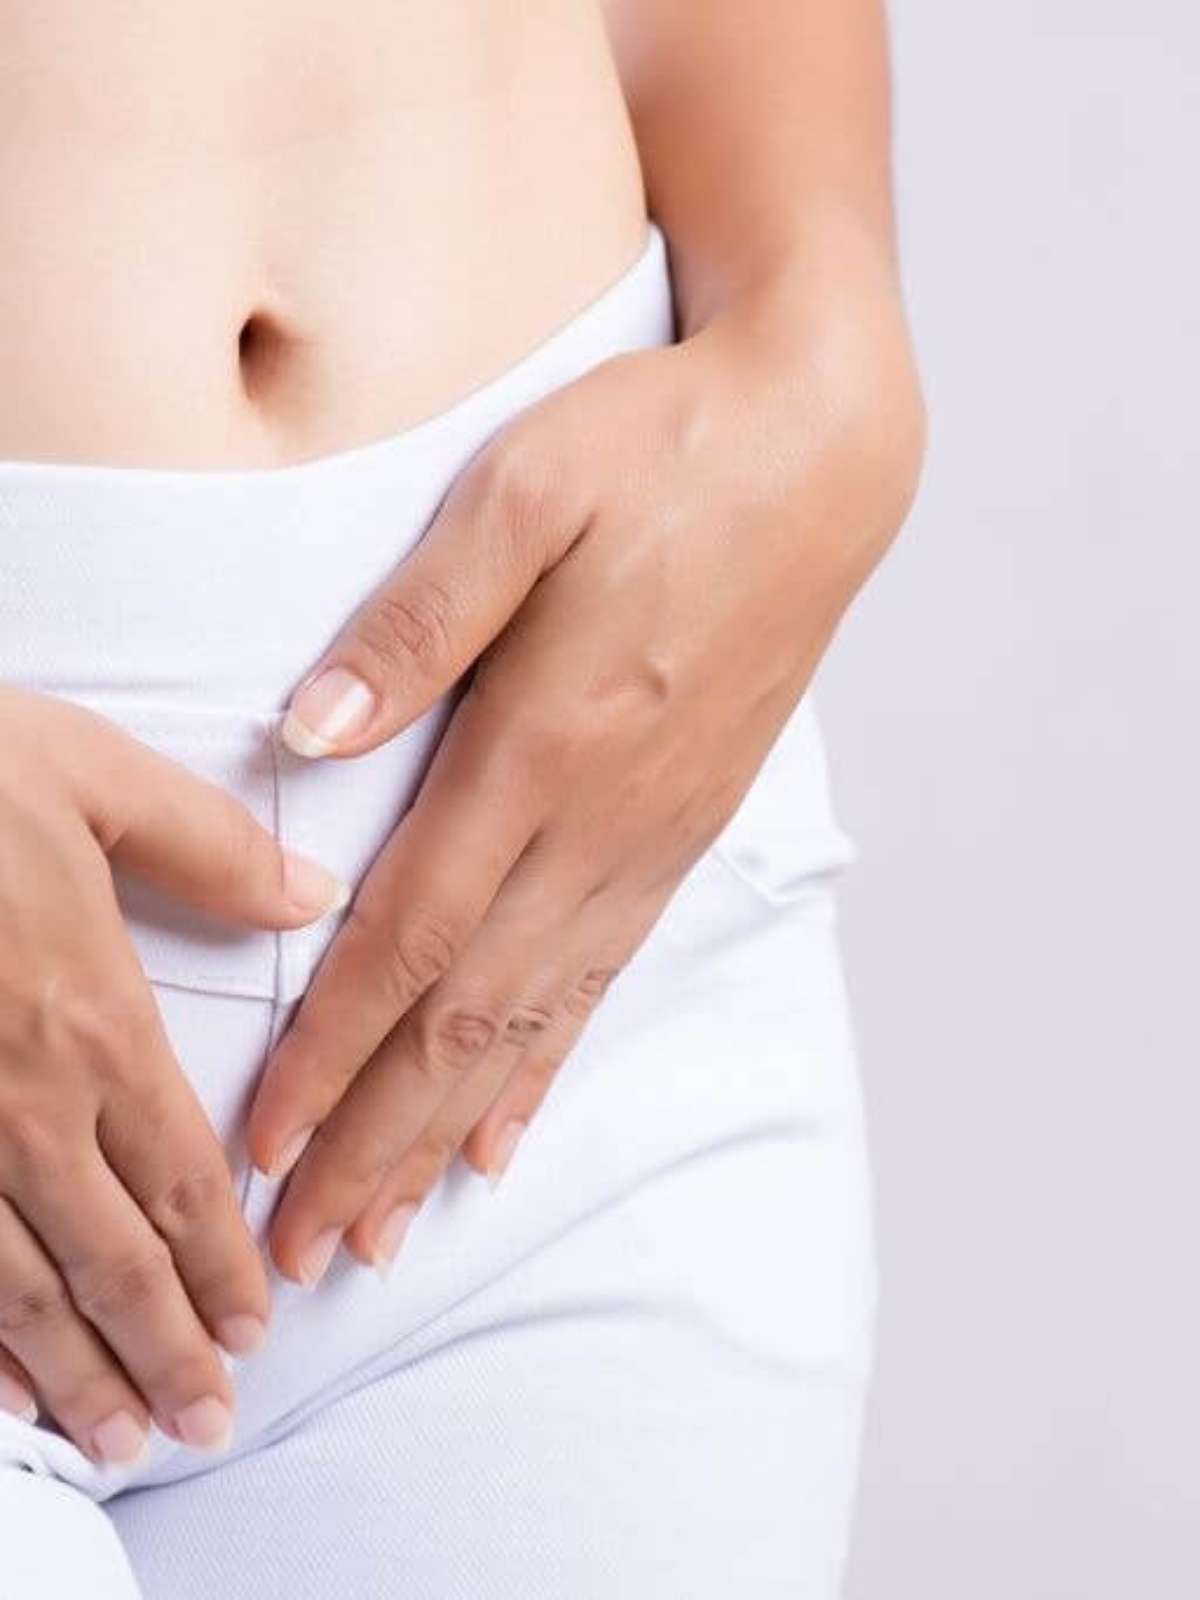 Corrimento branco vaginal sinaliza chance de engravidar foto